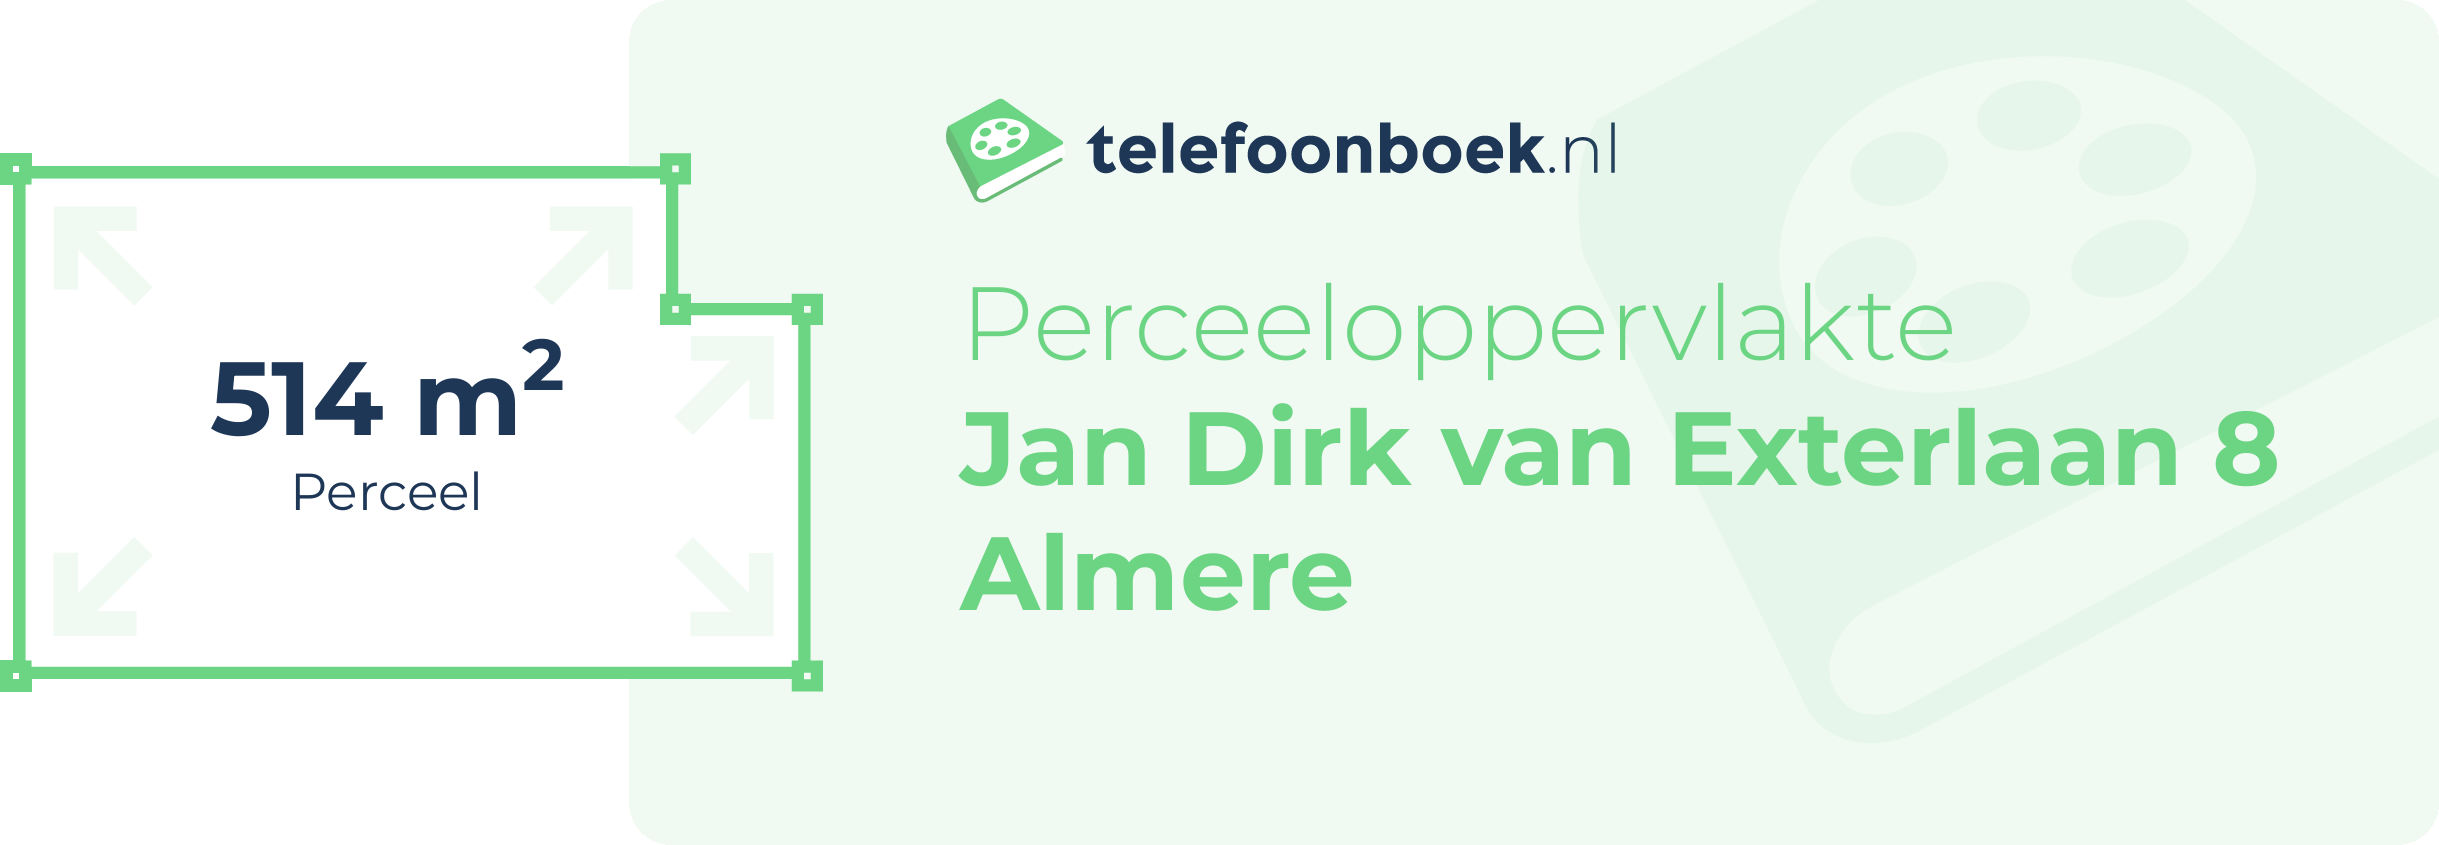 Perceeloppervlakte Jan Dirk Van Exterlaan 8 Almere